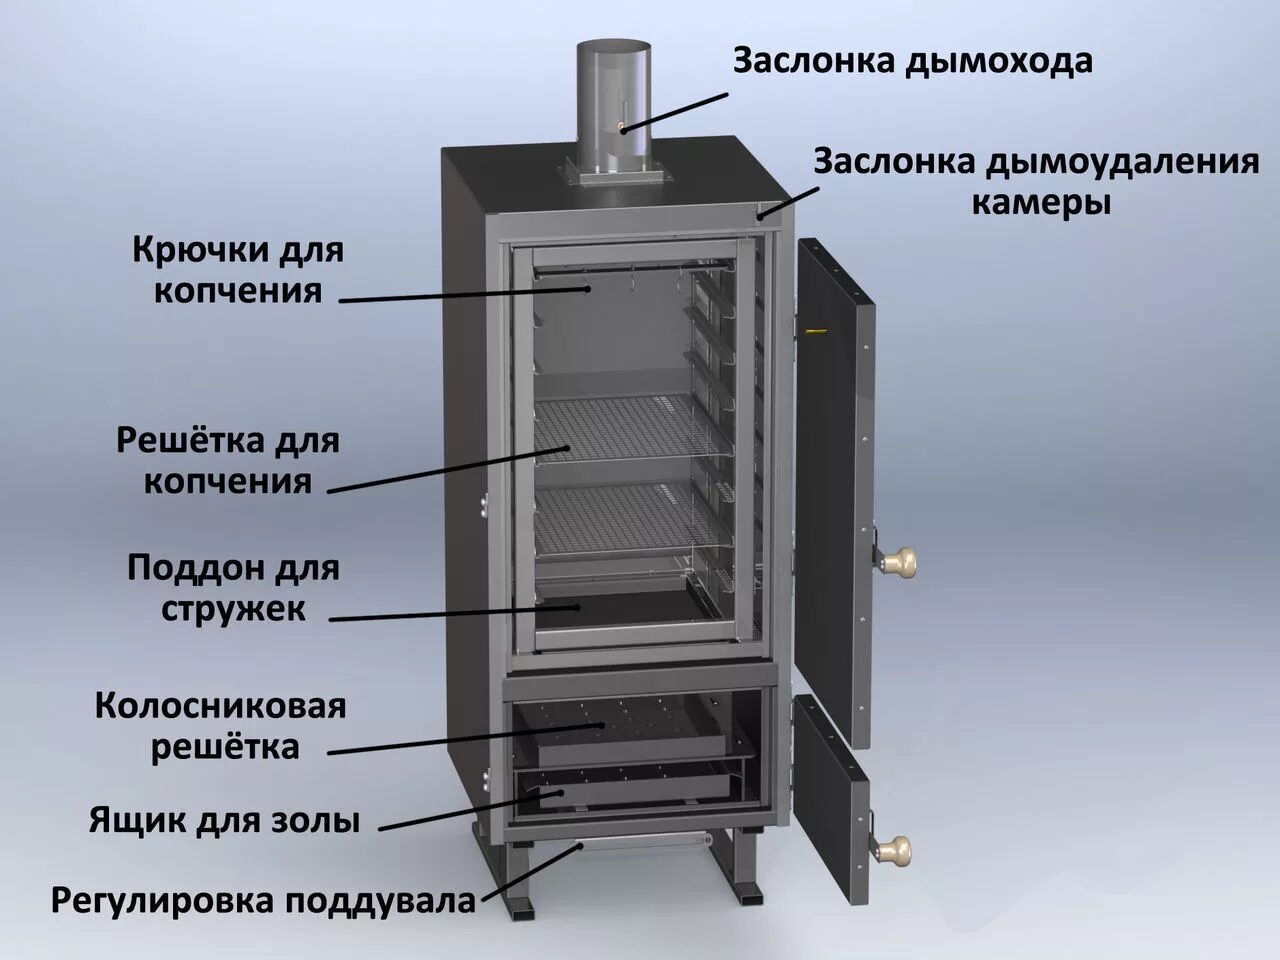 Коптильня Vesta "model k" (585х550х1466мм, 7 уровней, решетка 326х383 мм). Конструкция коптильни горячего копчения. Коптильный шкаф КП 100. Коптильня Vesta model k. Холодное и горячее копчение в чем разница